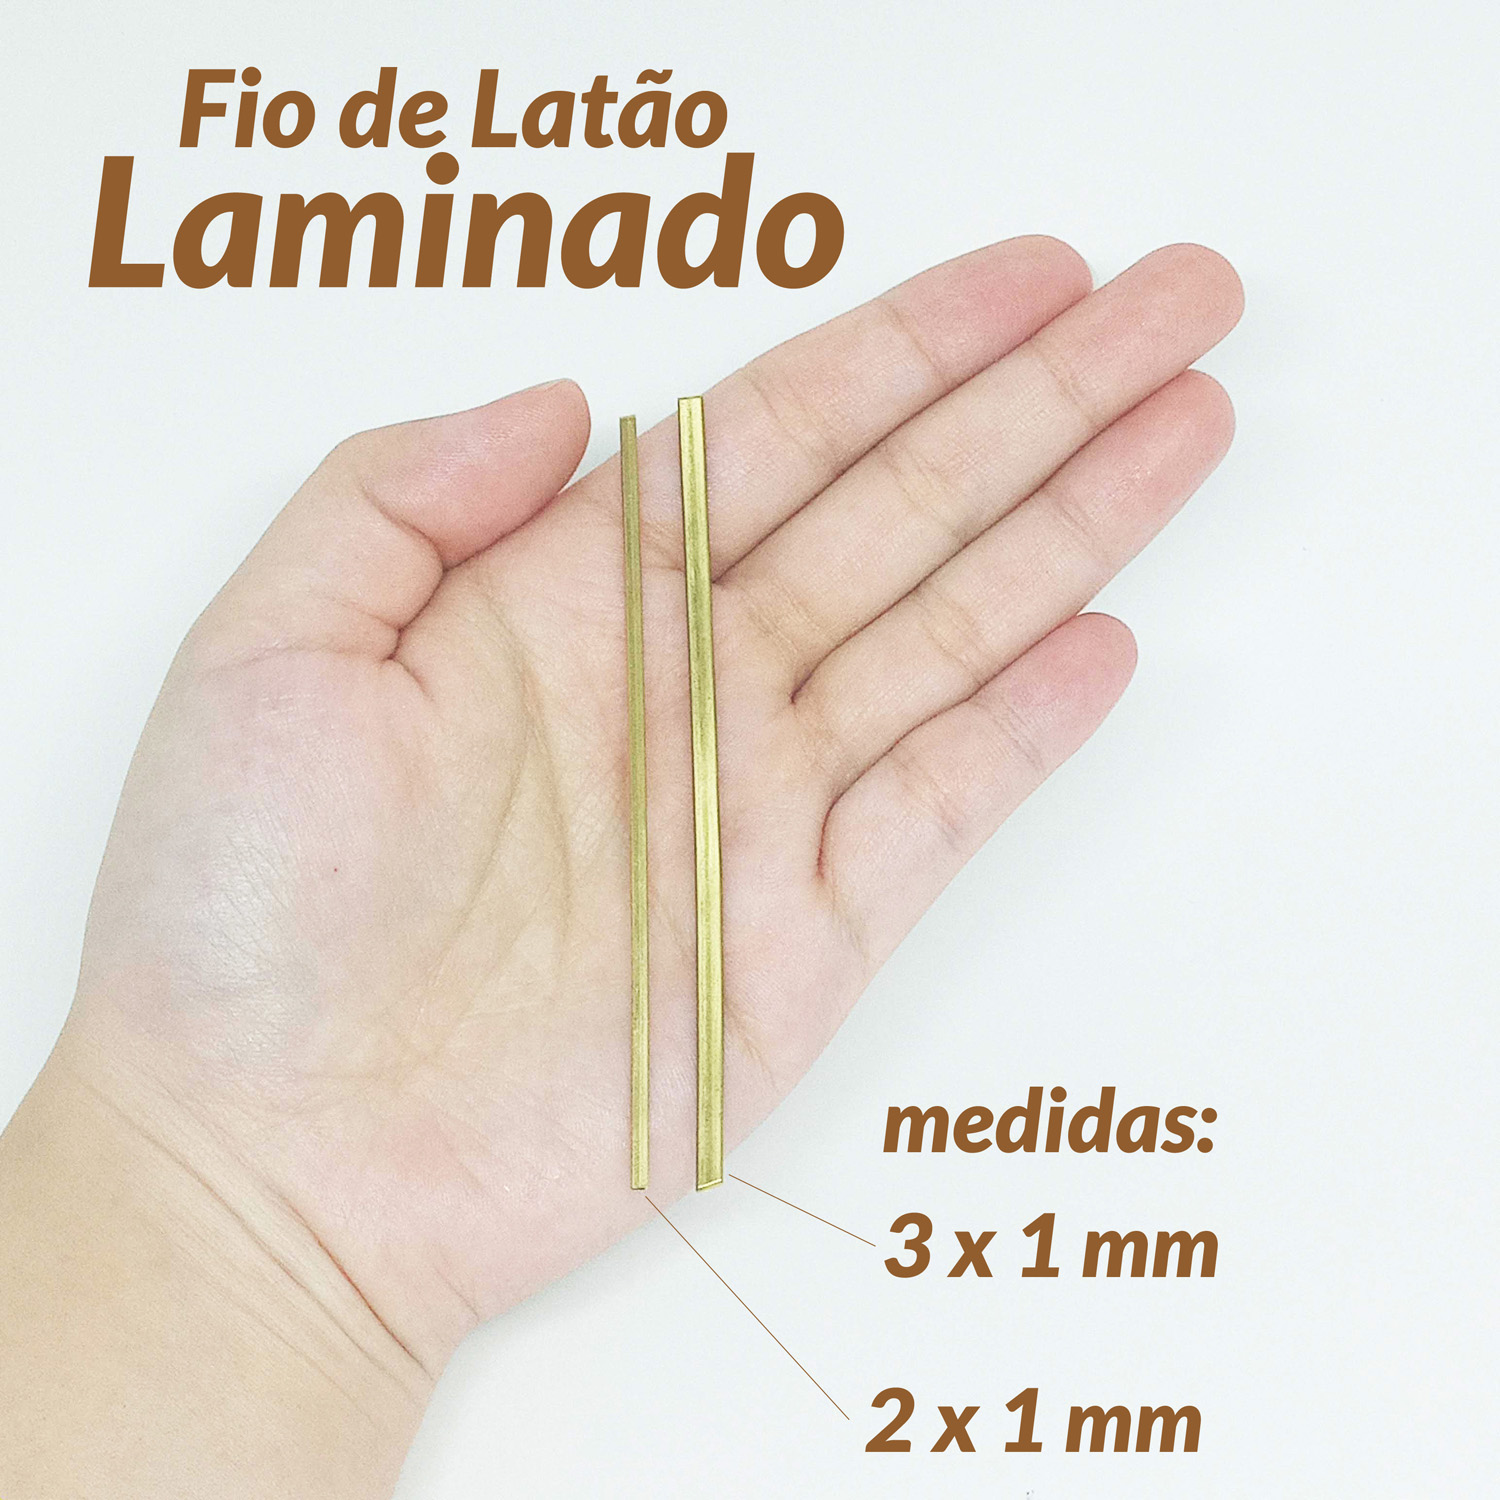 01-910180-FIO DE LATÃO LAMINADO 3X1 200G